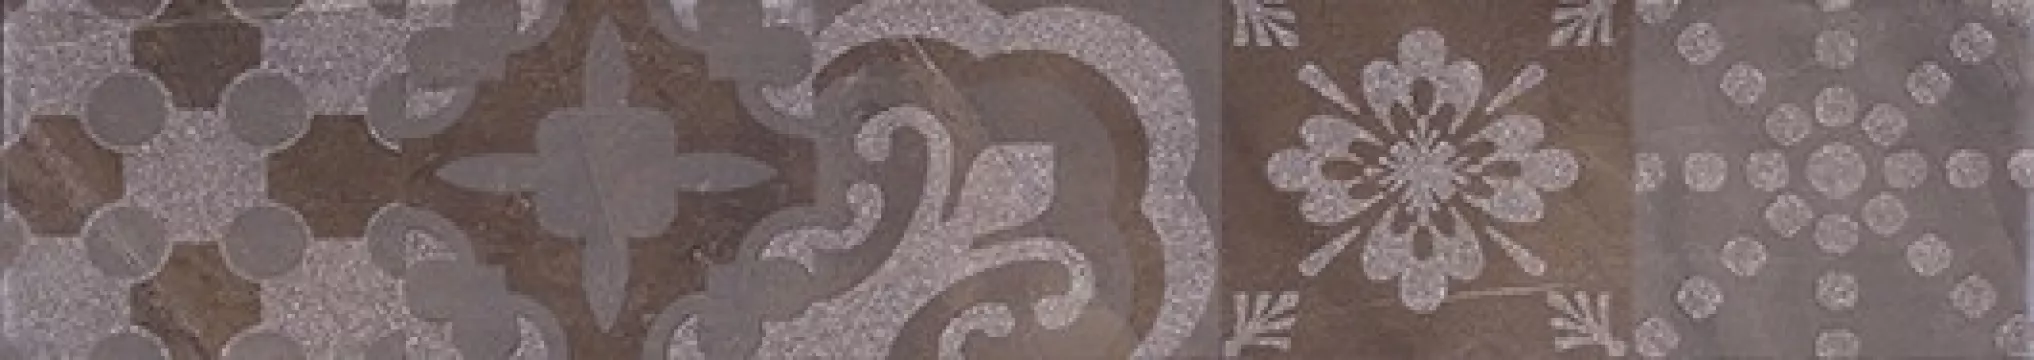 Плитка Lb-Ceramics 45x8 бордюр темный 1504-0152 Меравиль глянцевая глазурованная